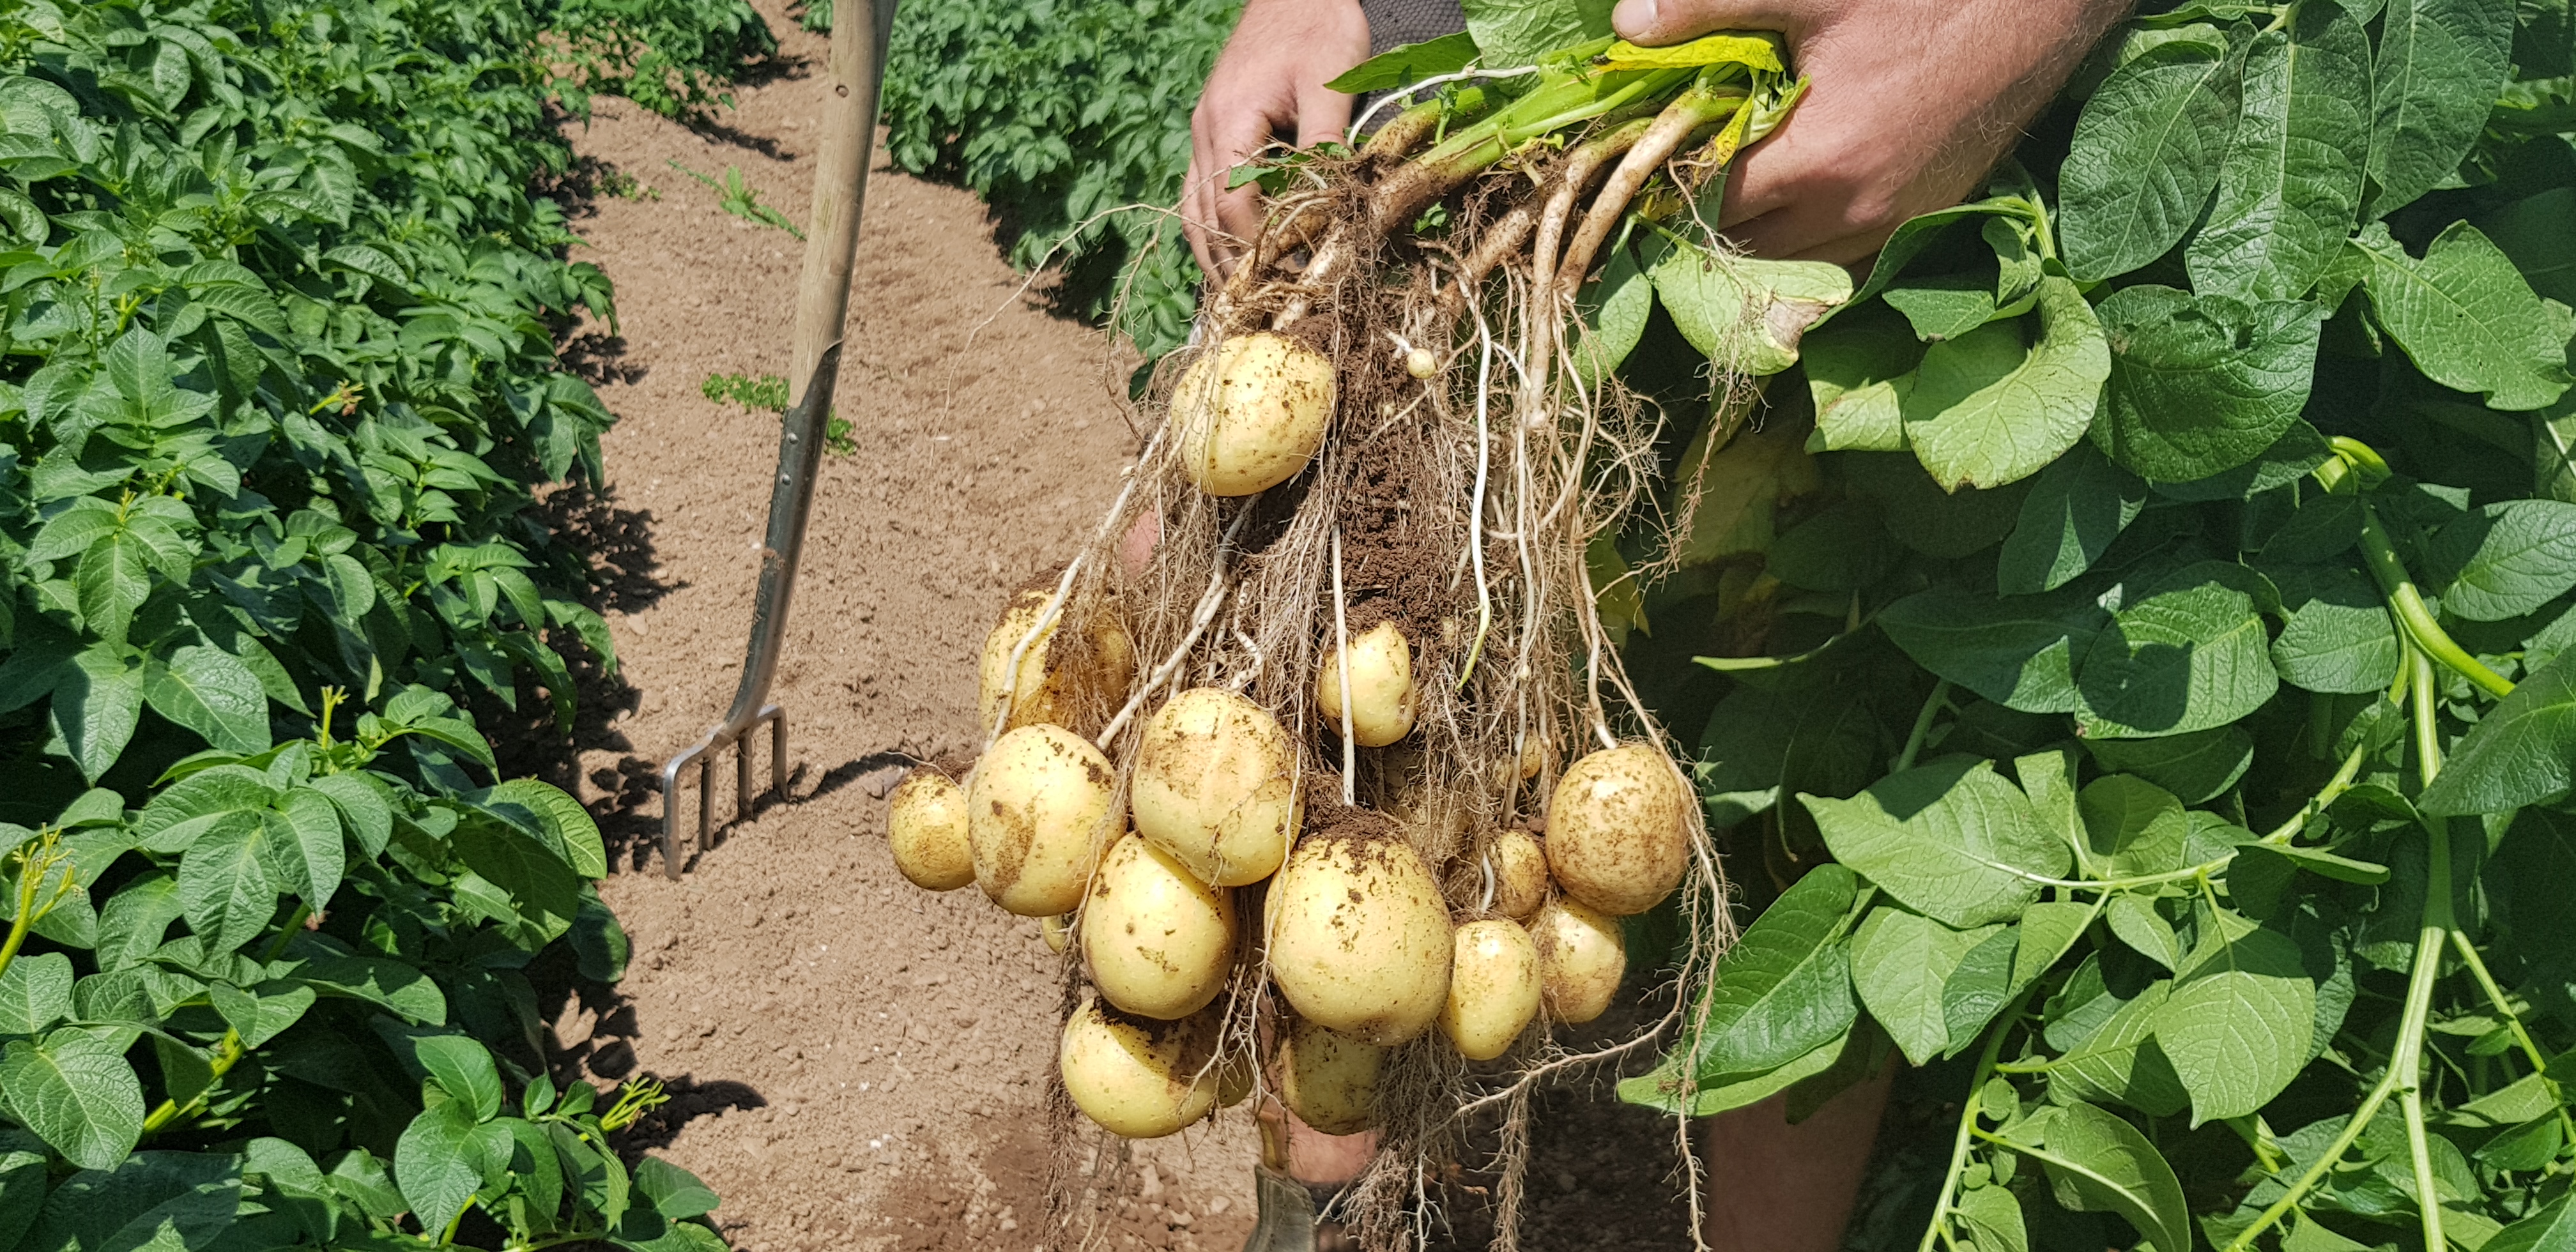 Lovely sample of pre-harvest potatoes